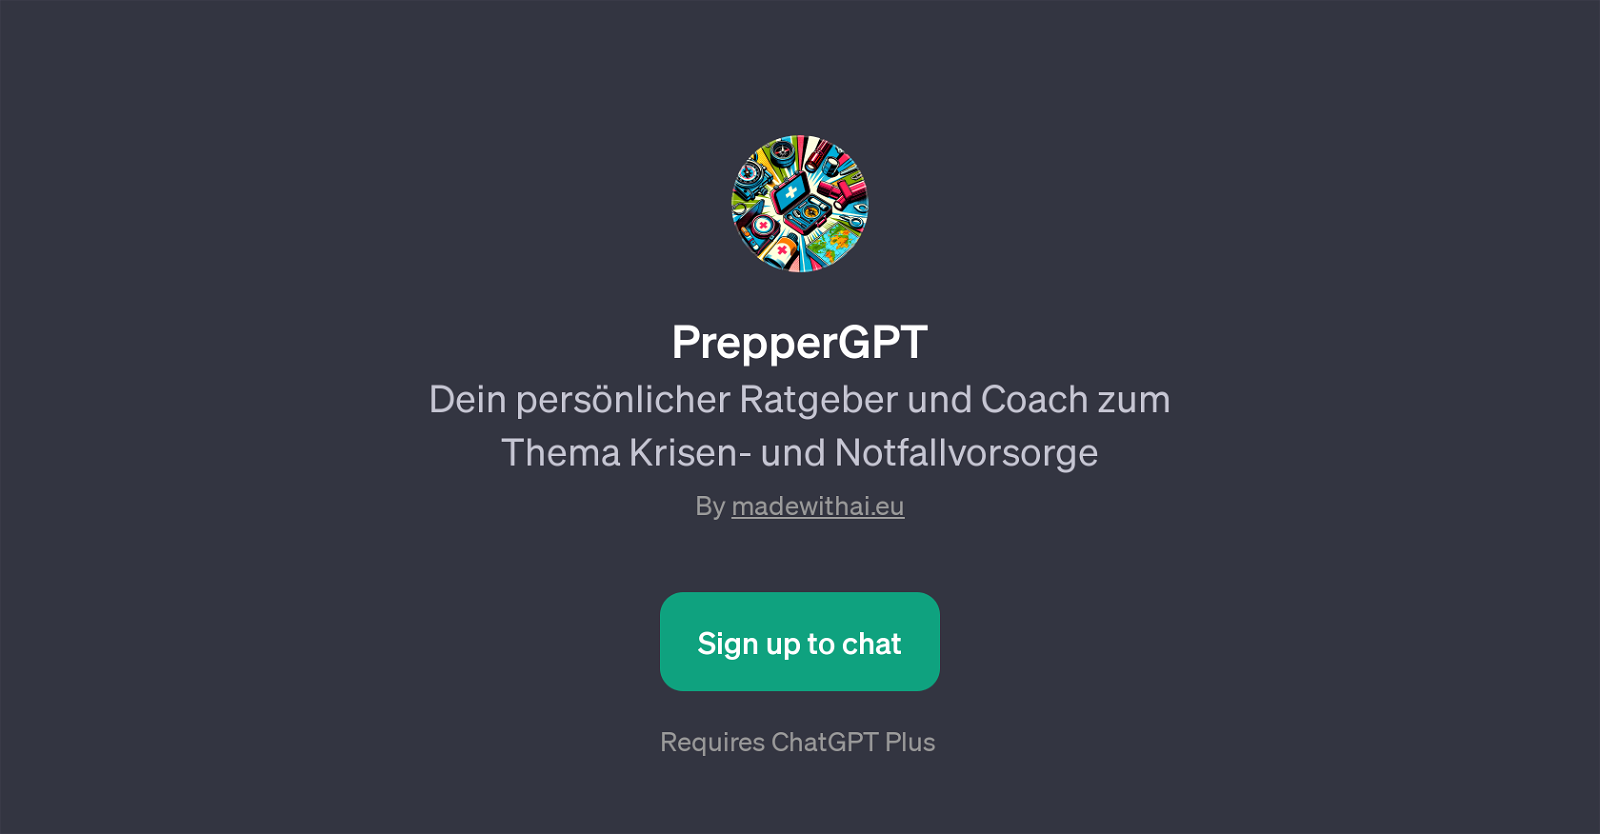 PrepperGPT website